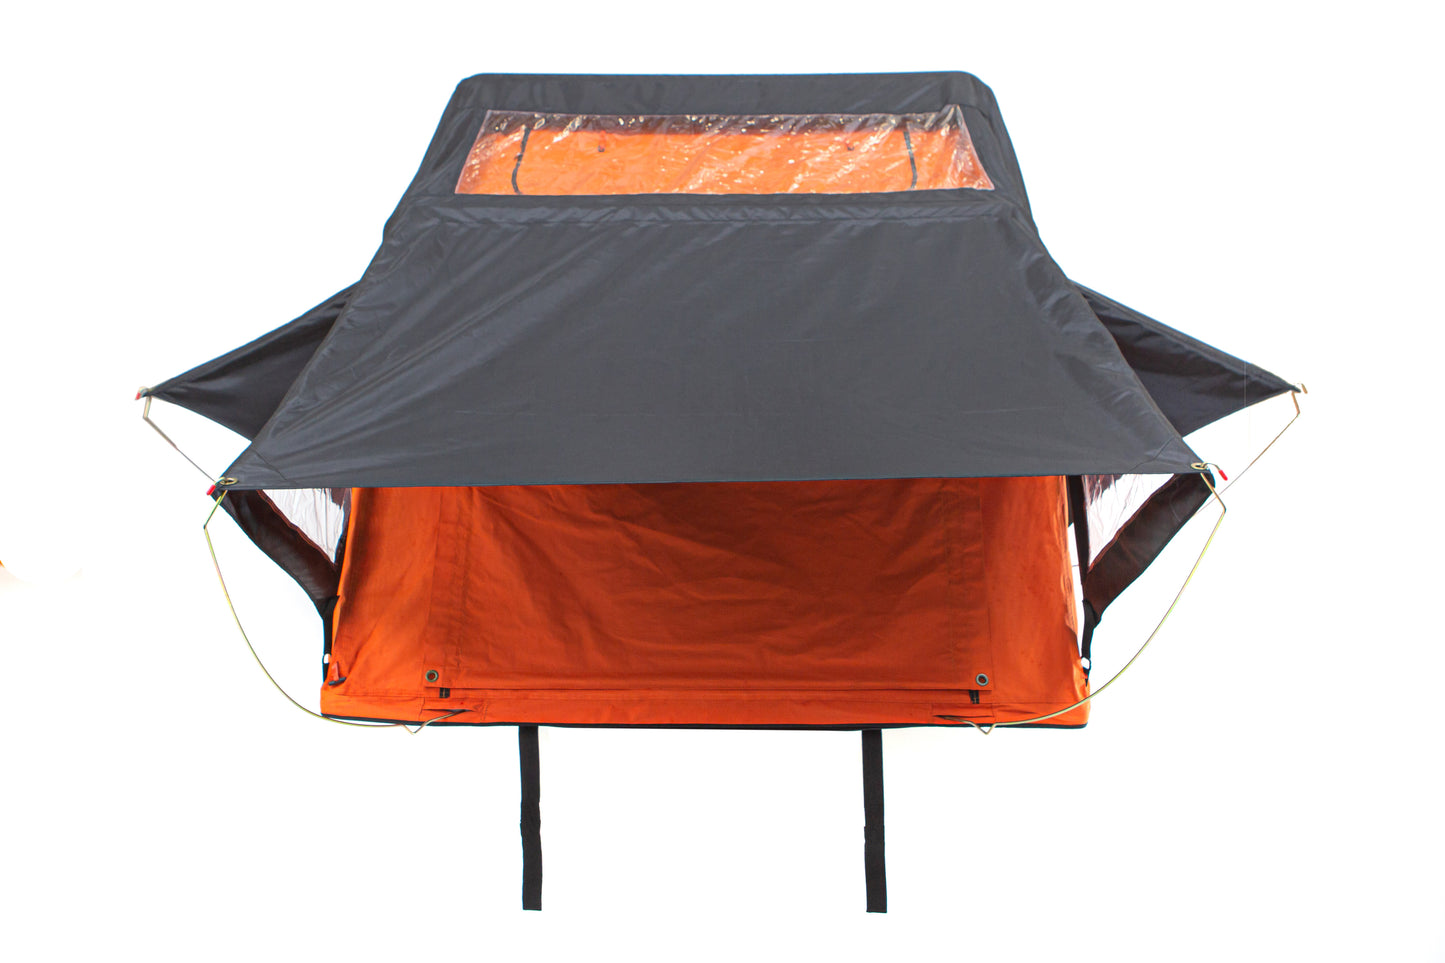 Migliori tende da tetto per viaggi in fuoristrada, maggiolina tenda, tenda da tetto auto decathlon, tenda da campeggio, recensioni tenda da tetto per SUV e fuoristrada, come installare una tenda da tetto